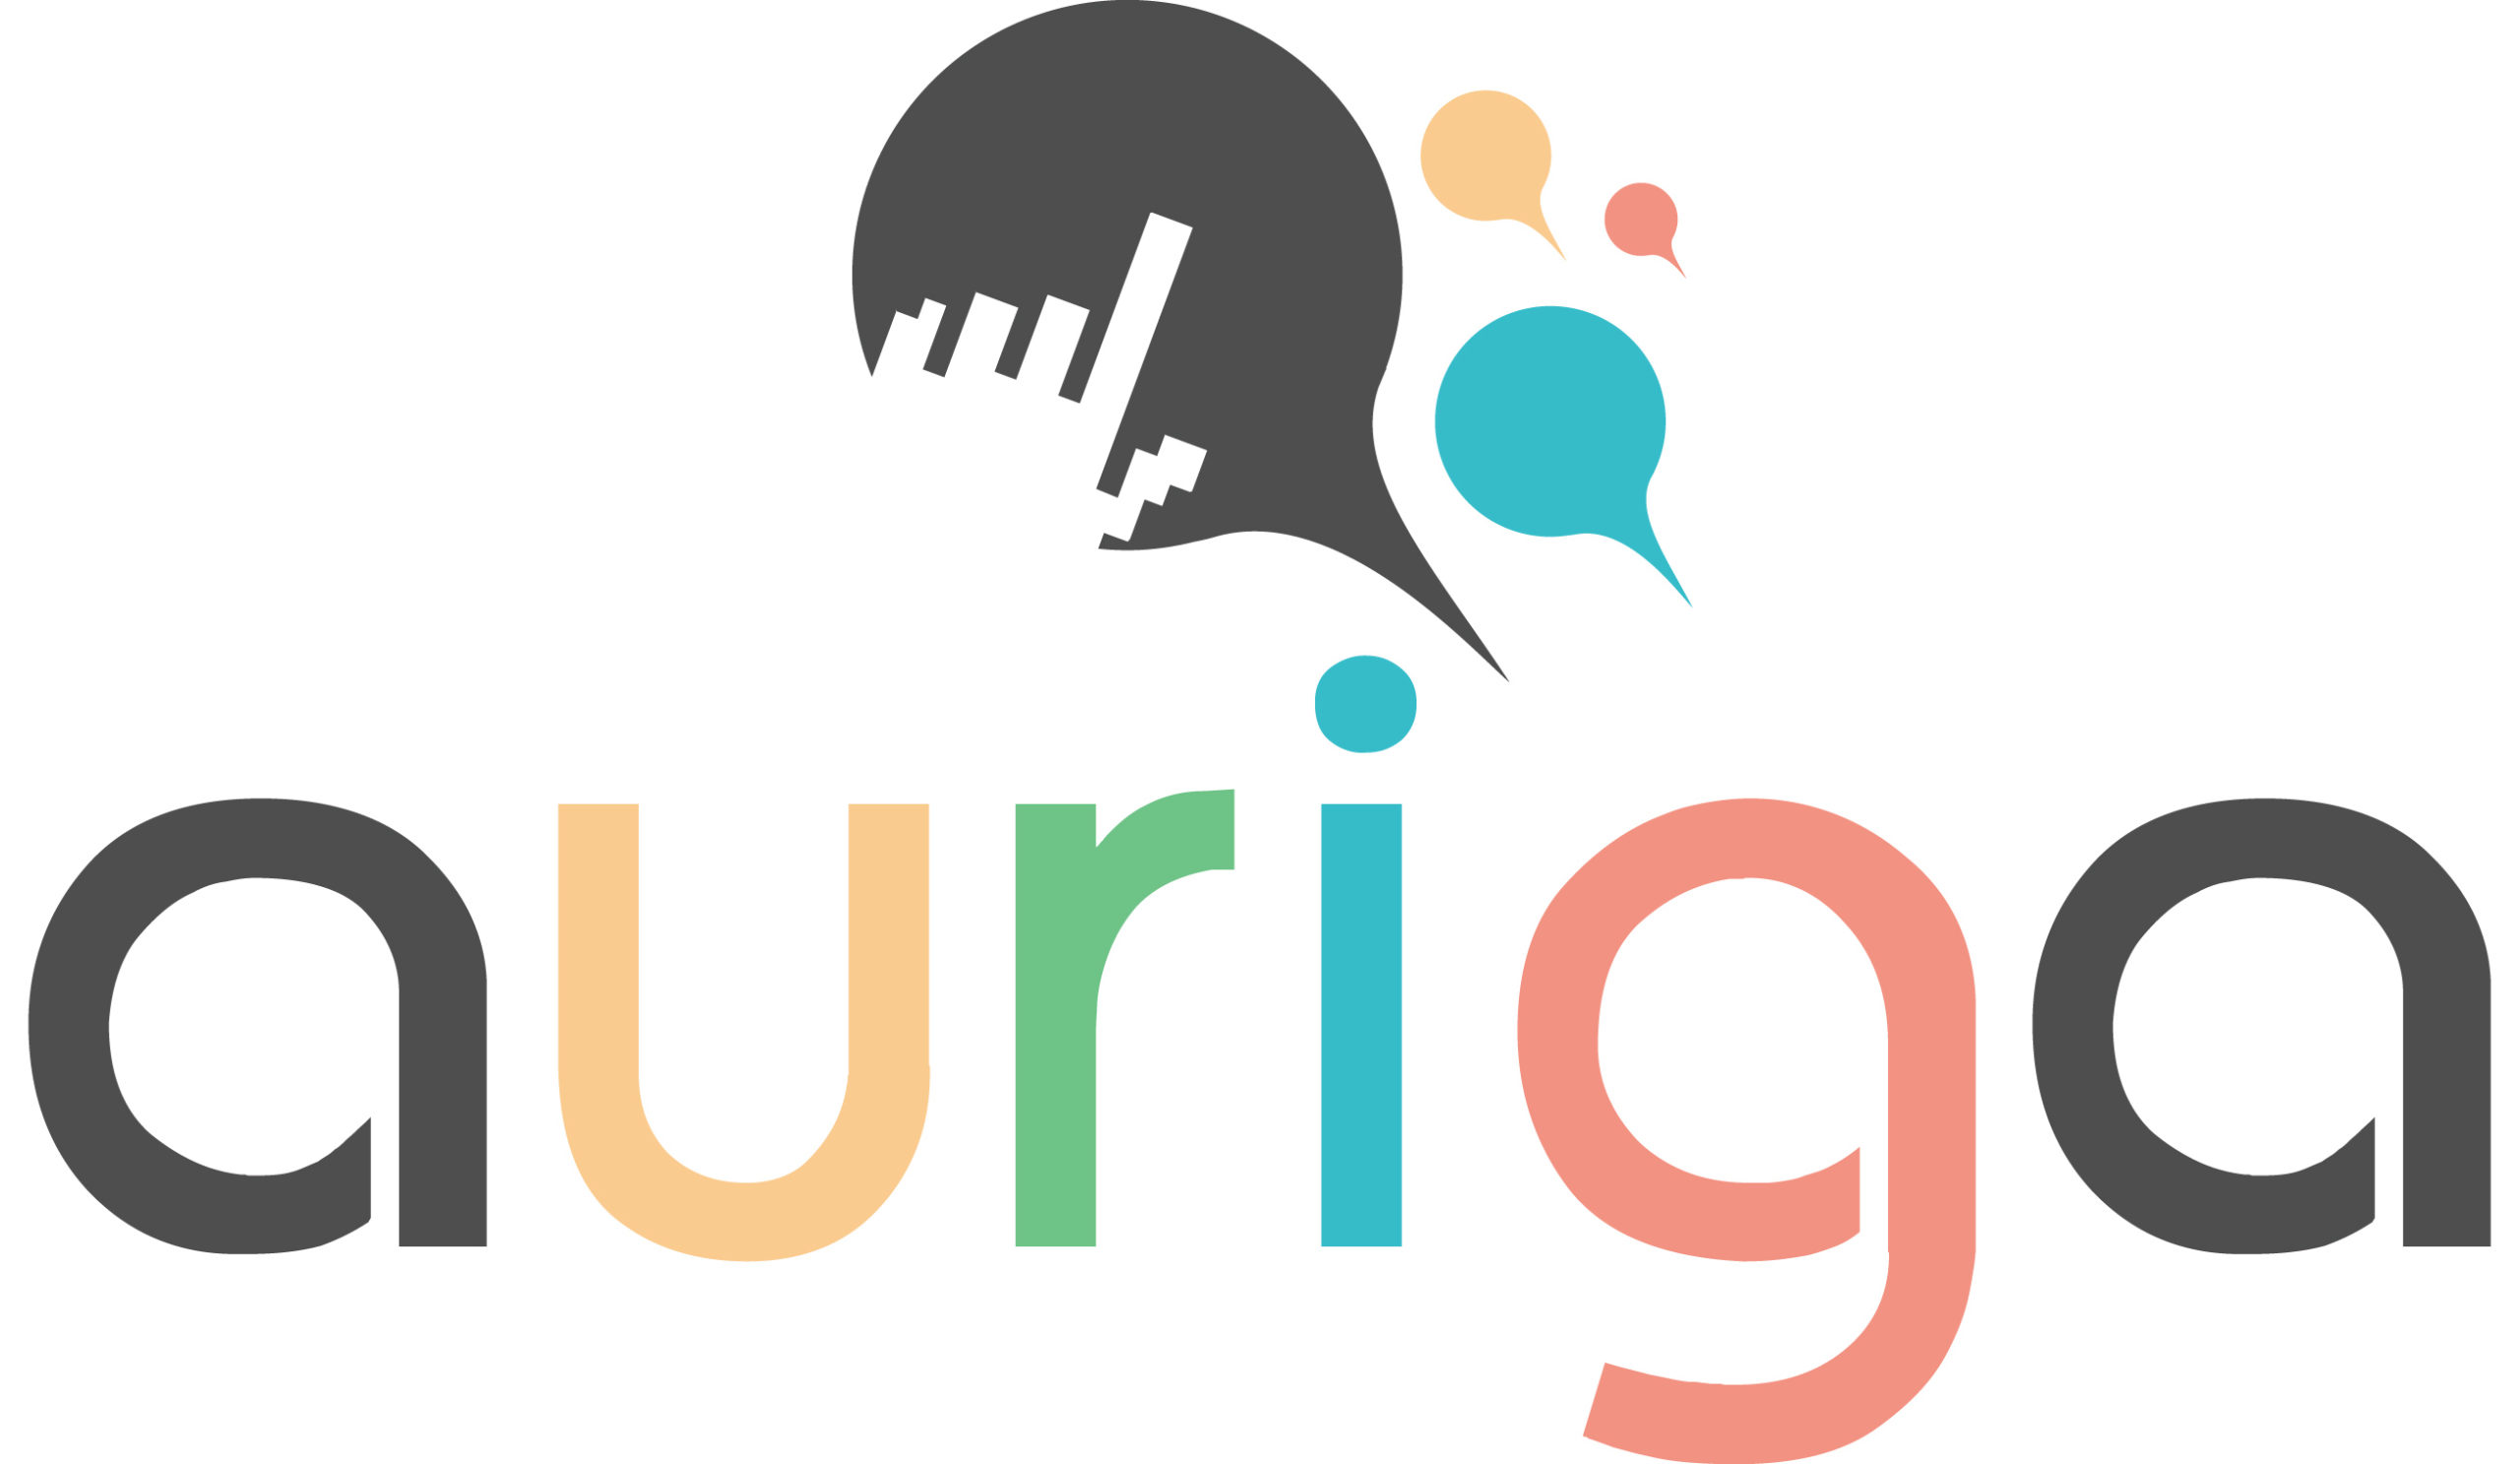 Auriga - poskytovatel internetového připojení